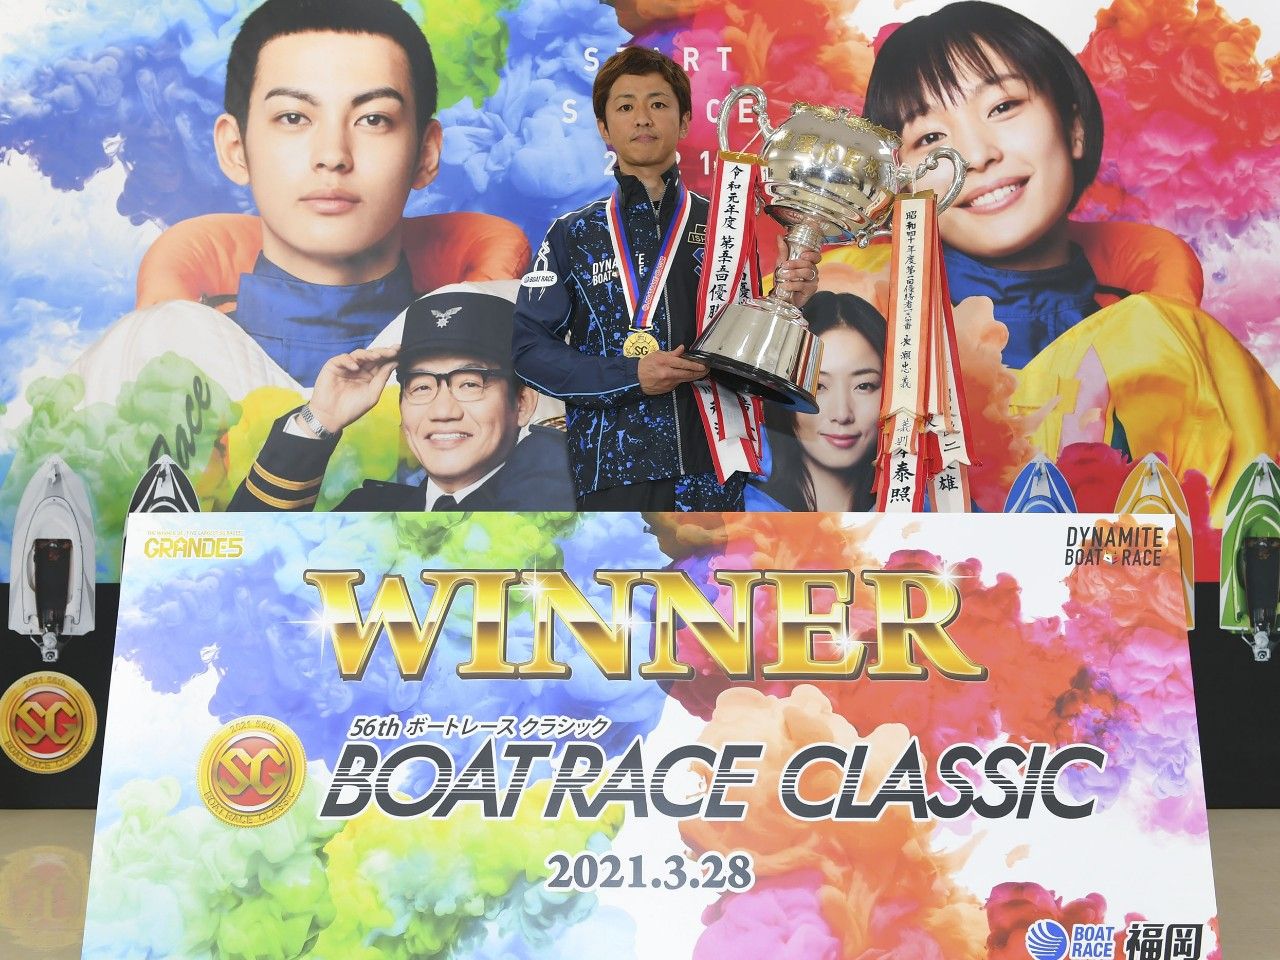 石野貴之、本年最初のSG福岡ボートレースクラシックをイン逃げで制すの画像